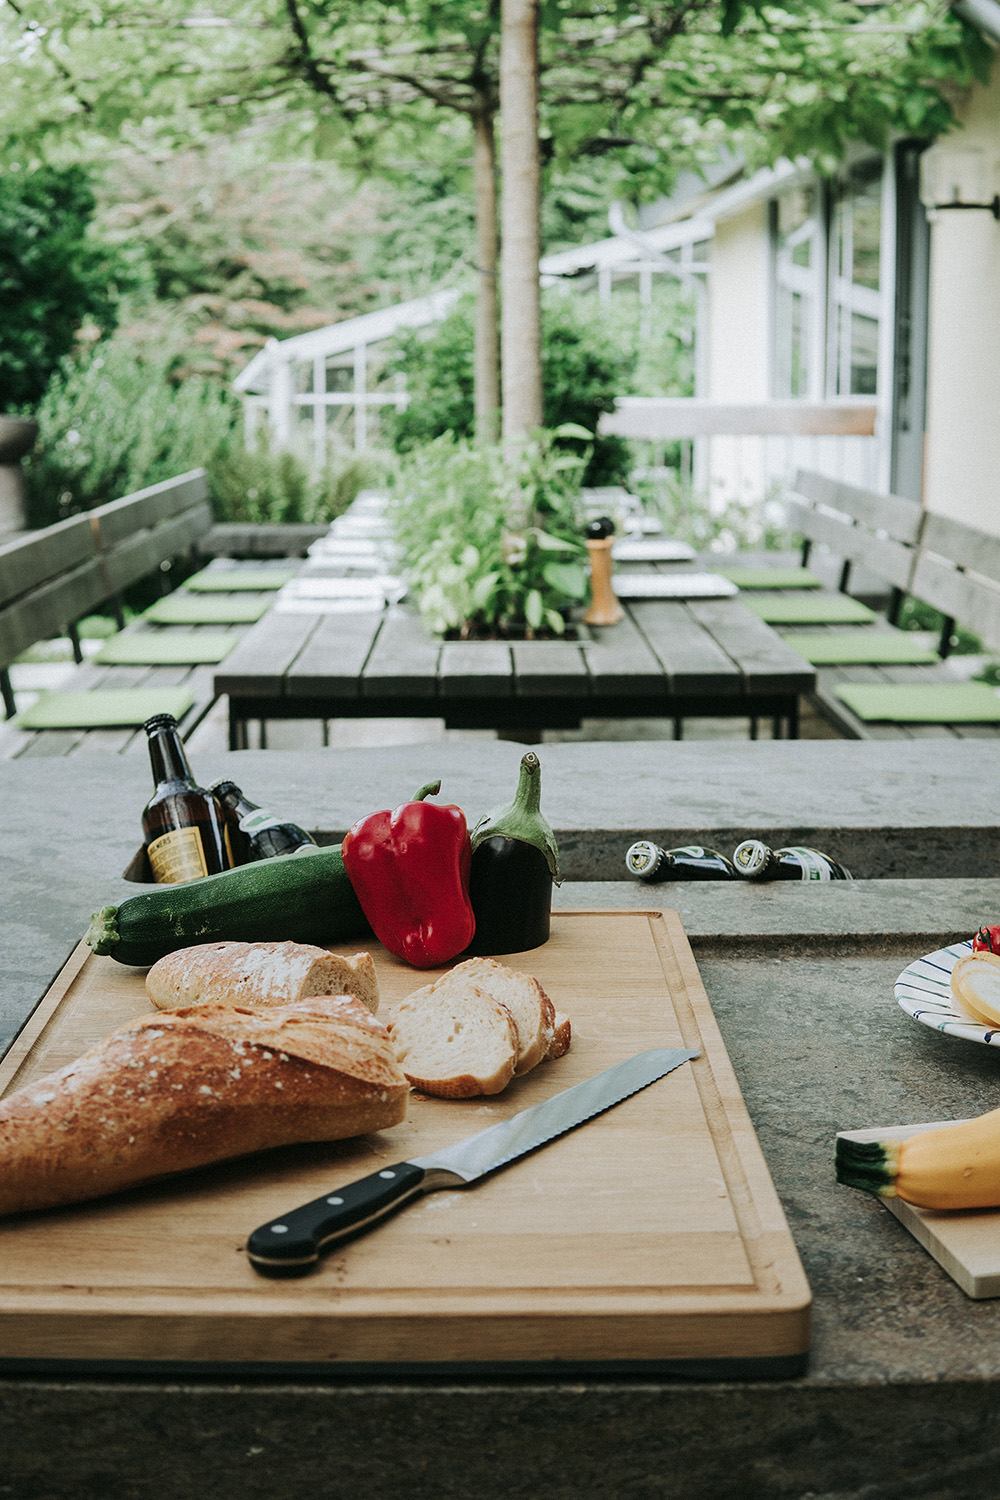 Auf der Arbeitsplatte aus Naturstein der Außenküche liegt ein Holzbrett mit Brot, Gemüse und einem Schneidemesser. Der Blick geht von der Arbeitsplatte in Richtung gedeckter Esstisch mit grüner Bepflanzung.